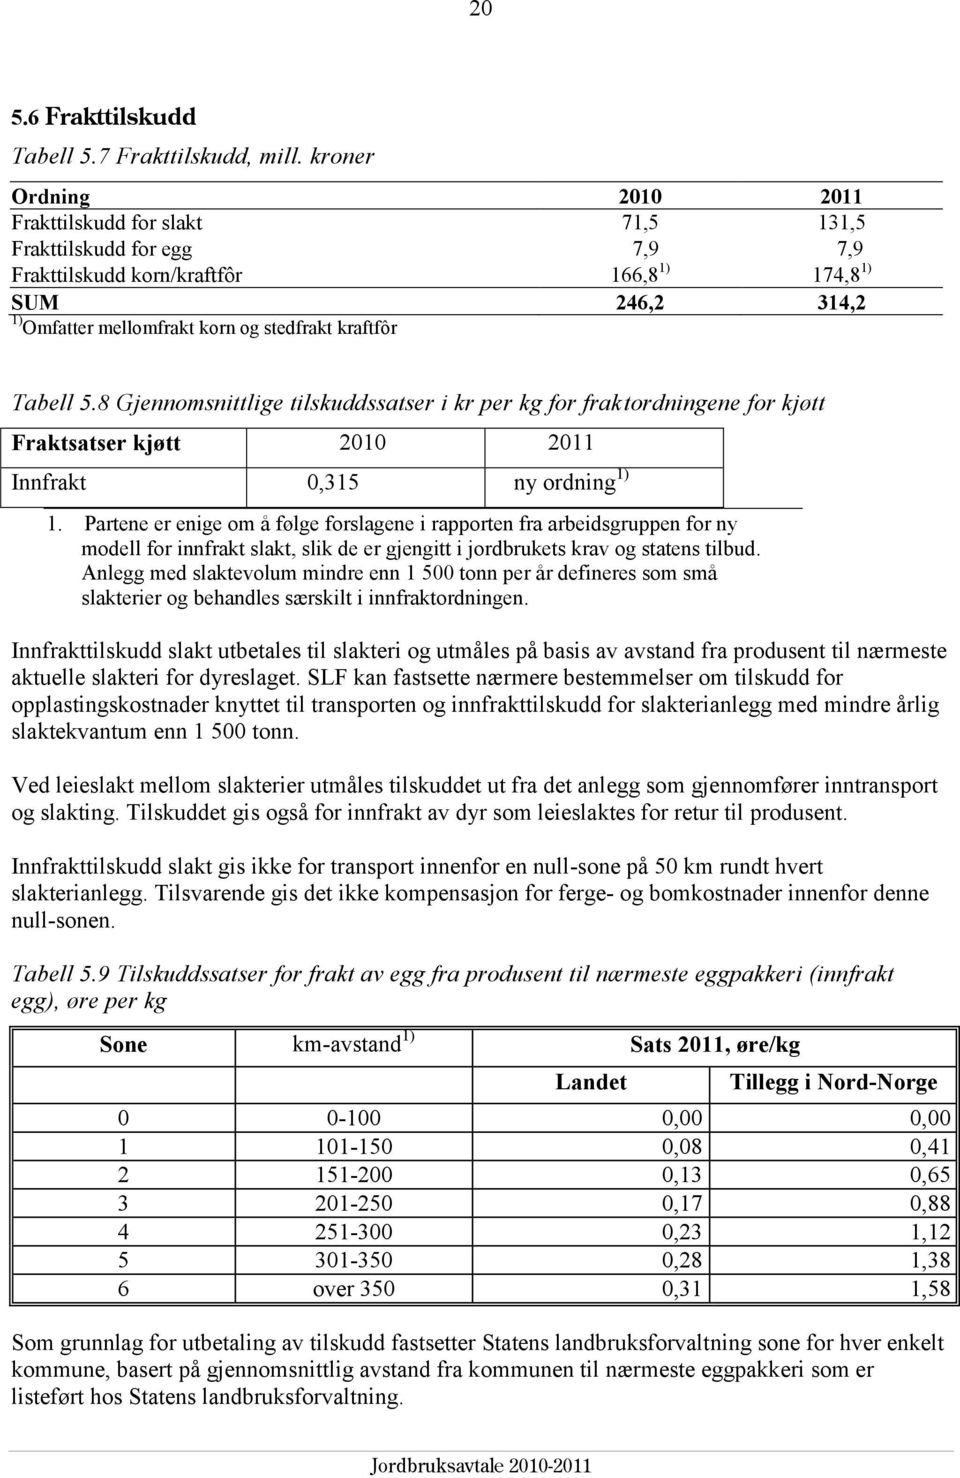 kraftfôr Tabell 5.8 Gjennomsnittlige tilskuddssatser i kr per kg for fraktordningene for kjøtt Fraktsatser kjøtt 2010 2011 Innfrakt 0,315 ny ordning 1) 1.